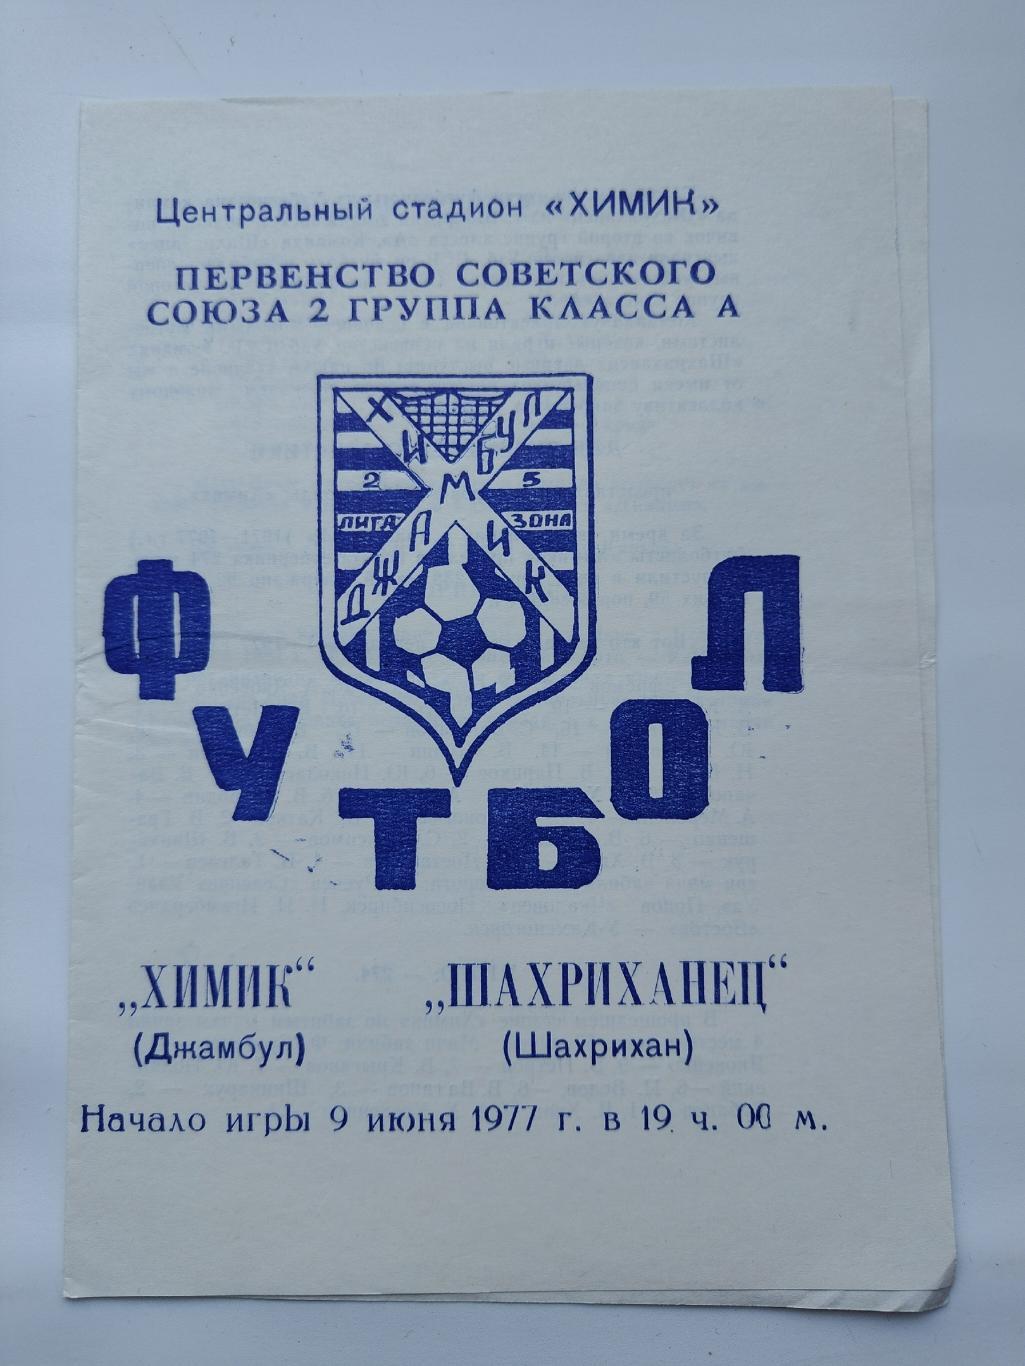 Химик Джамбул - Шахриханец Шахрихан 1977